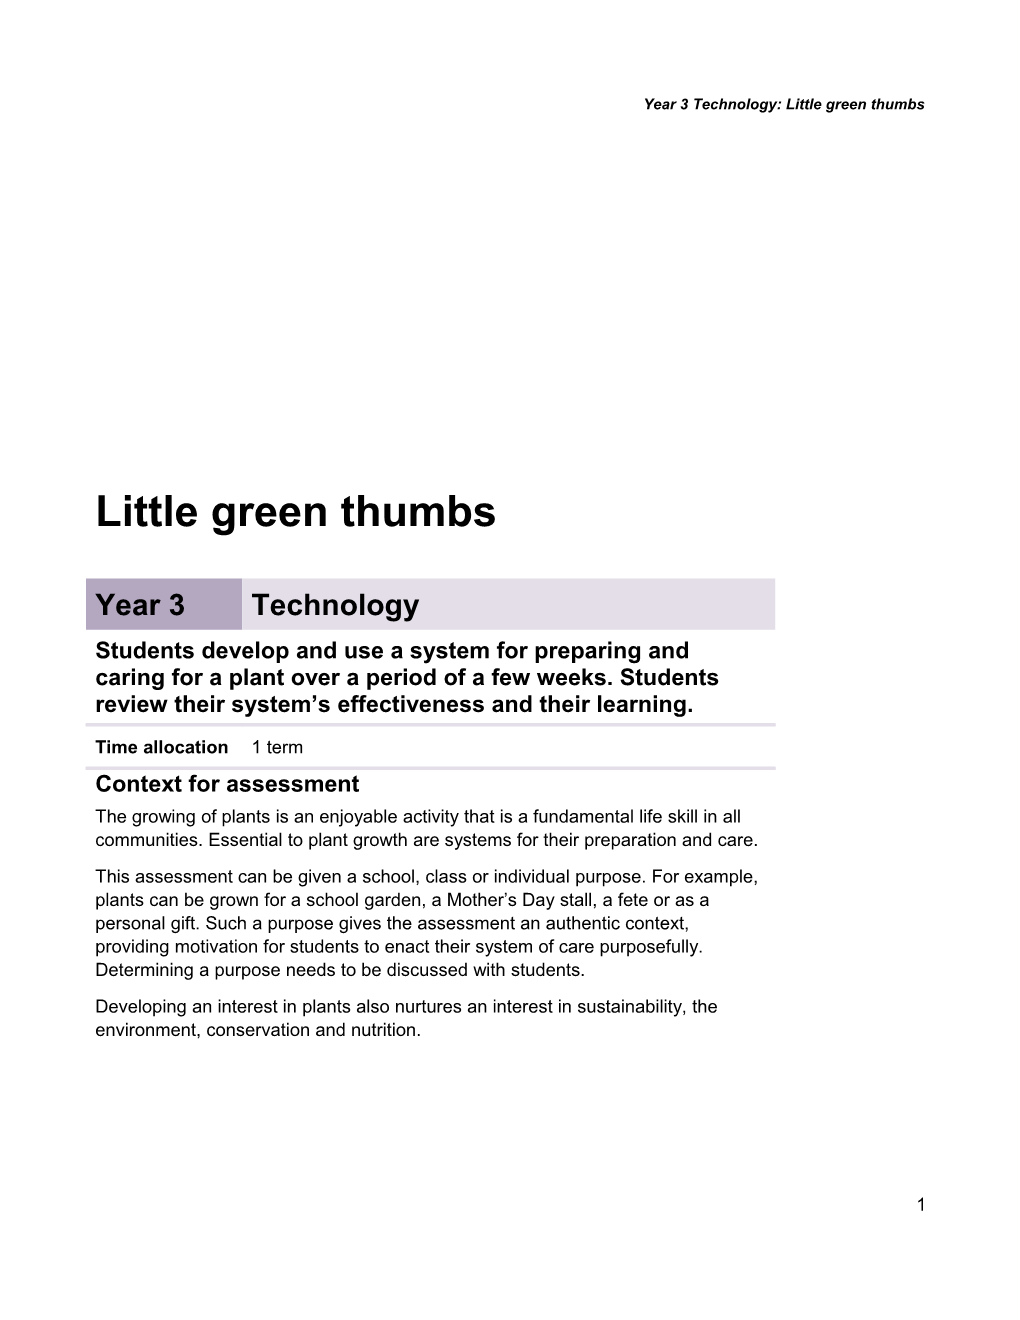 Year 3 Technology Assessment Teacher Guidelines Little Green Thumbs Queensland Essential